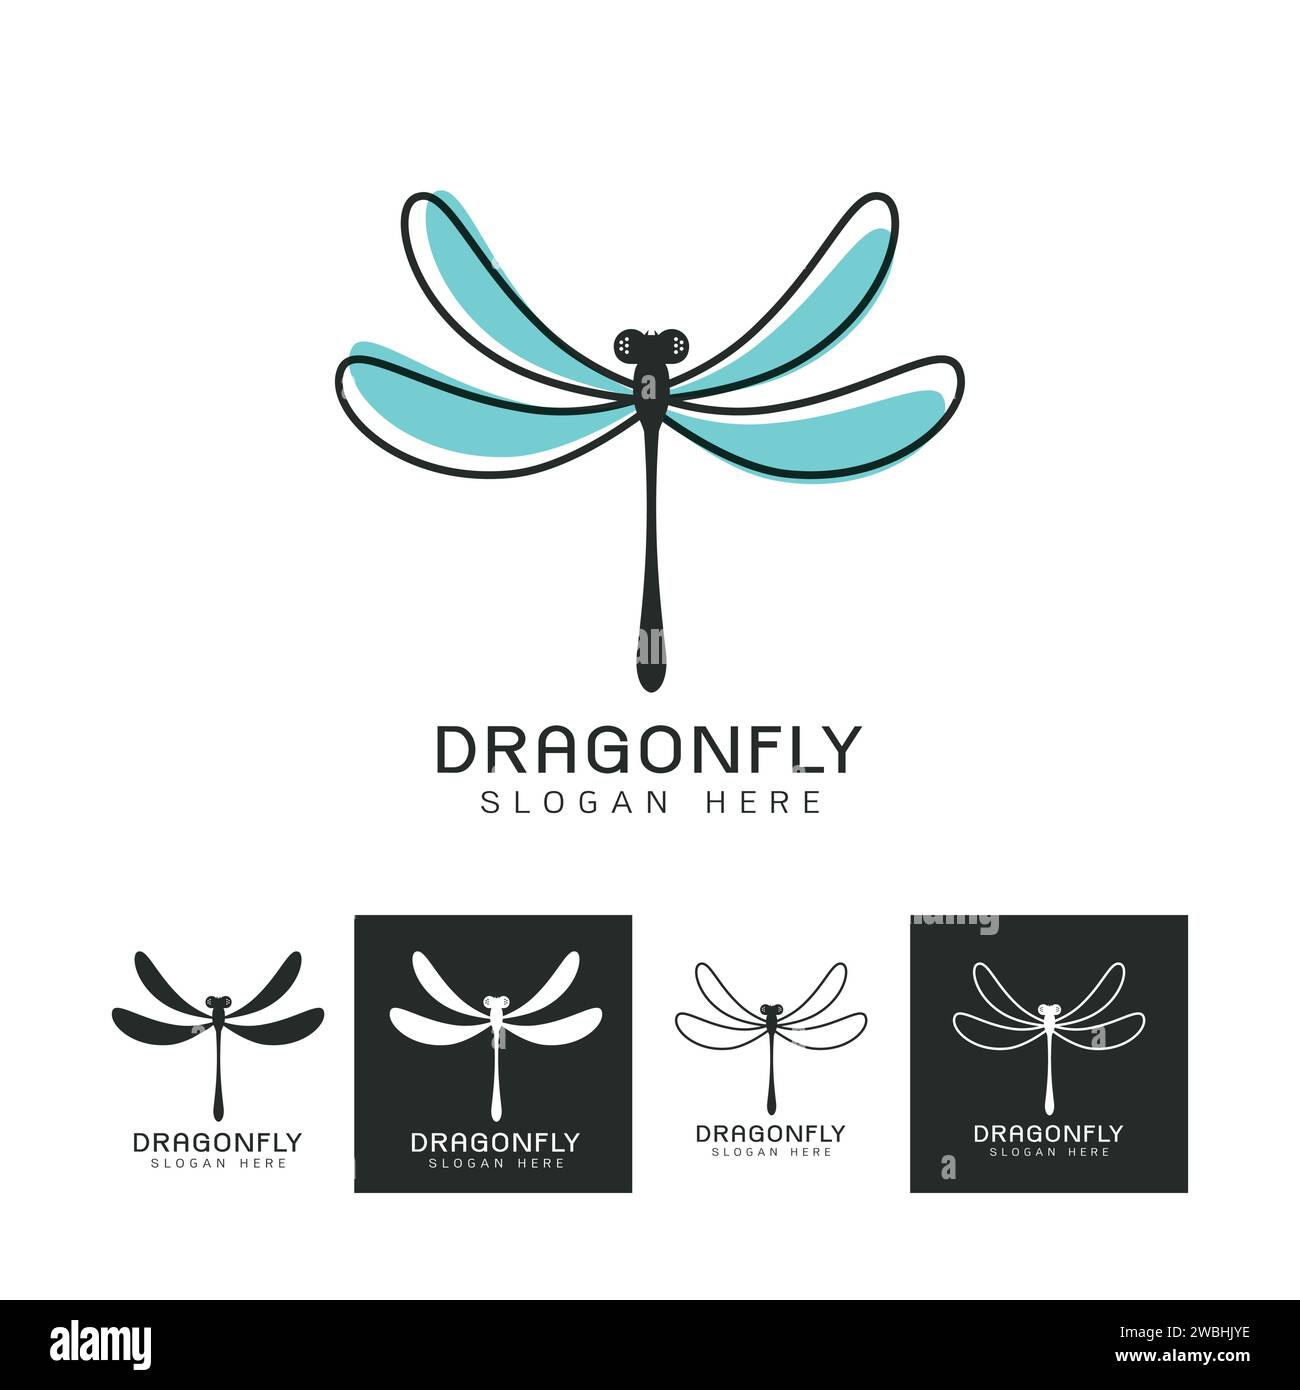 Ensemble de belle icône de logo libellule, image stylisée de modèle de logo Dragonfly, tatouage Dragonfly, dessin au trait Dragonfly sur fond blanc Vector illustrat Illustration de Vecteur